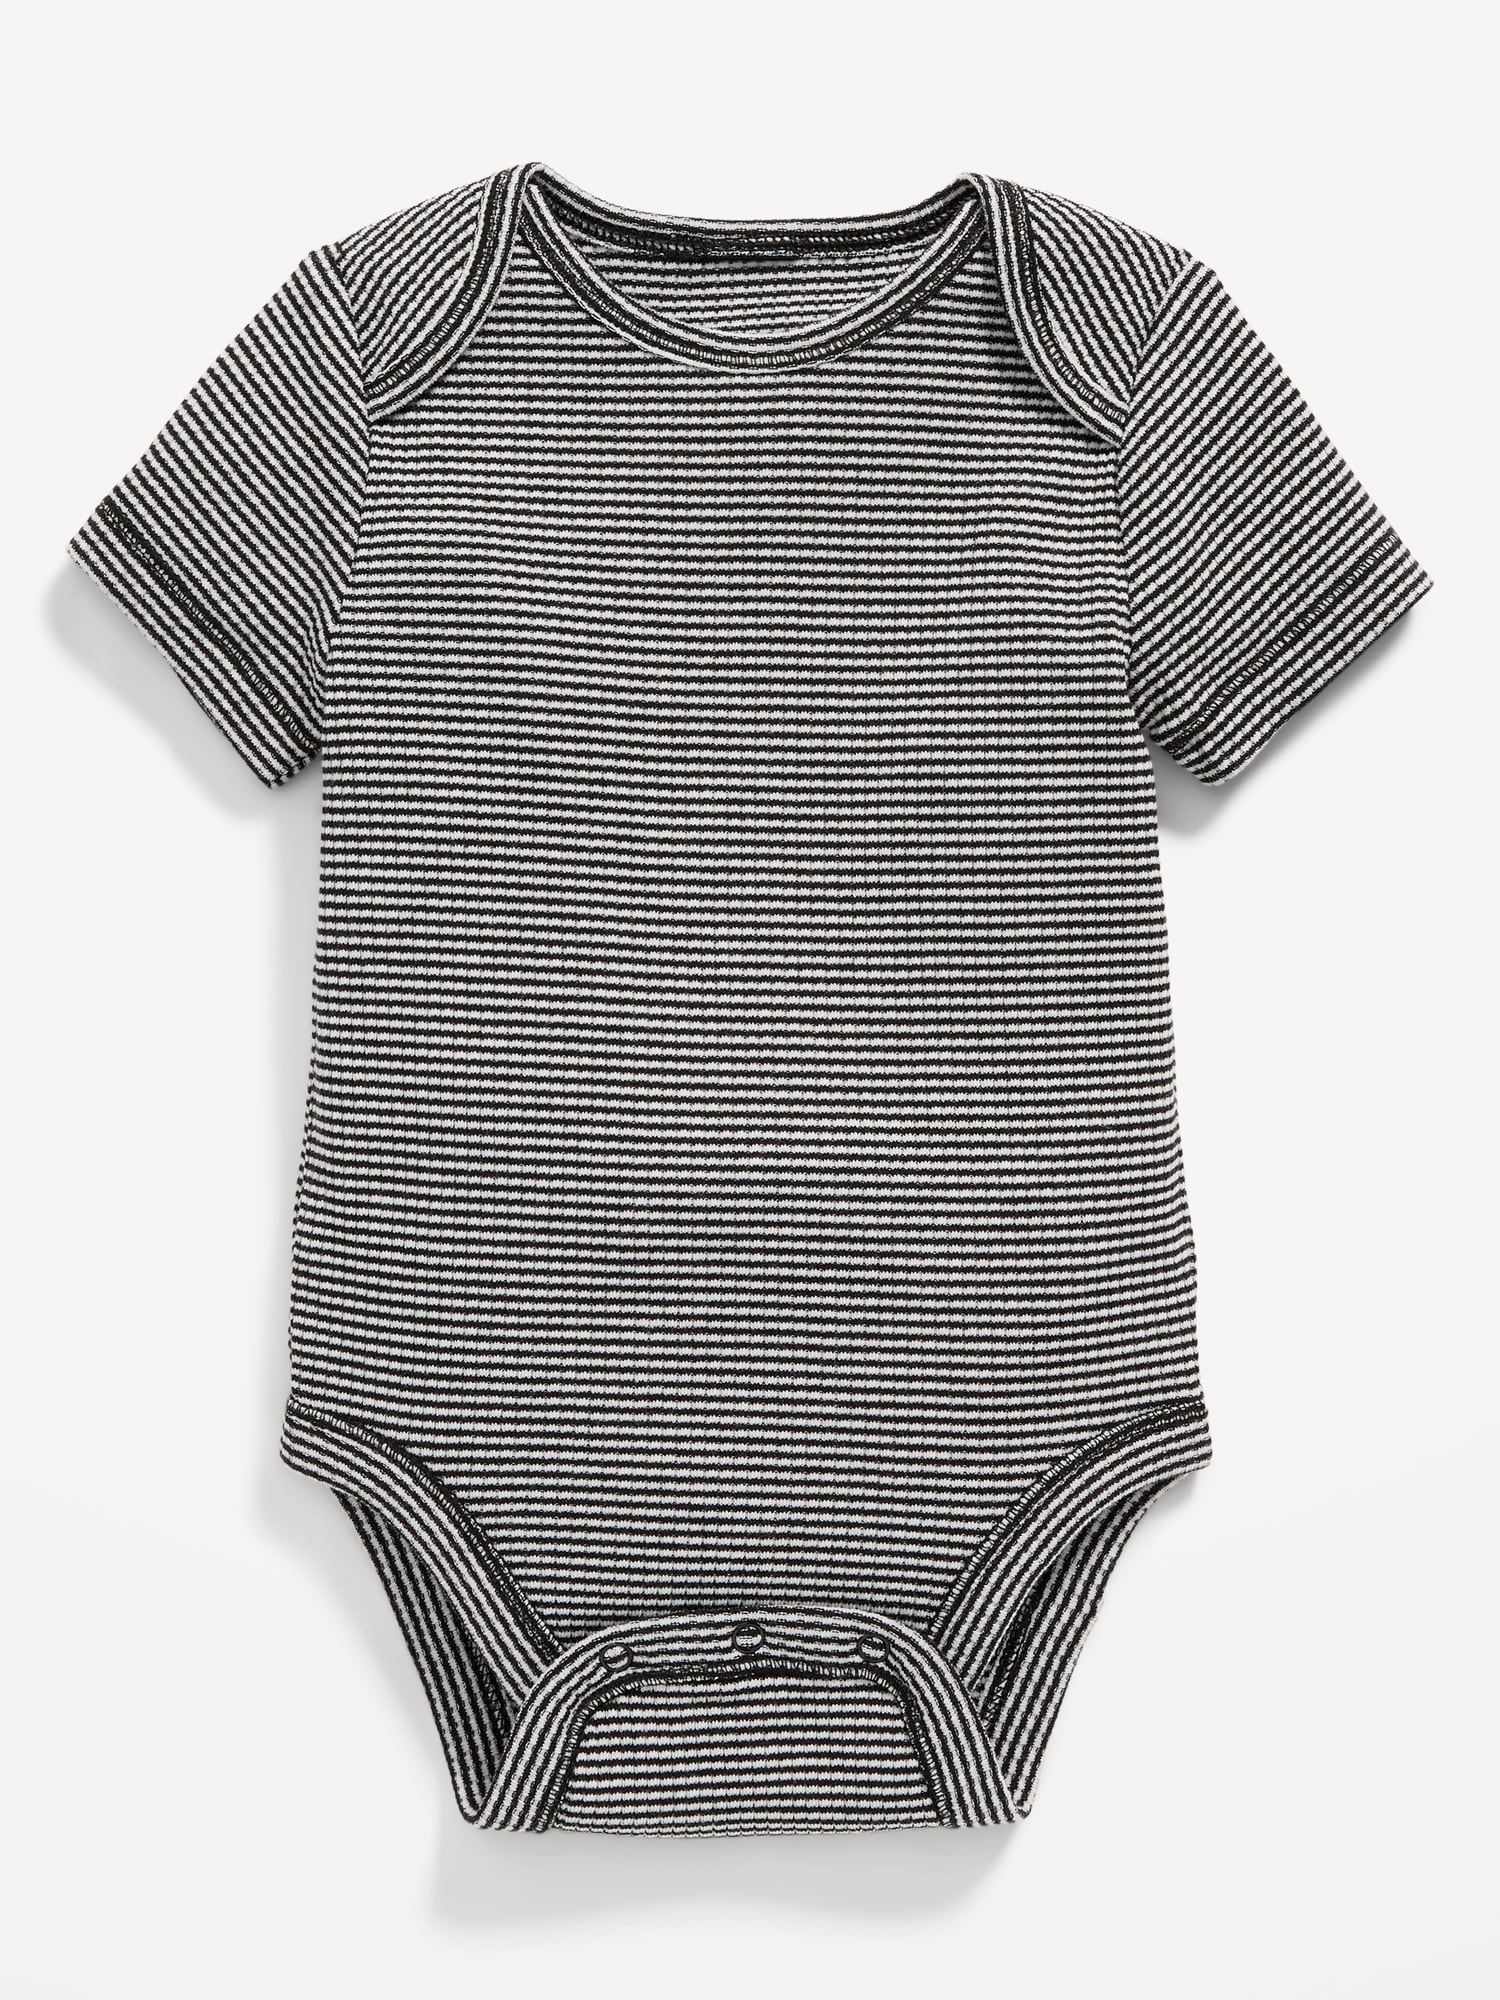 Unisex Printed Short-Sleeve Bodysuit for Baby